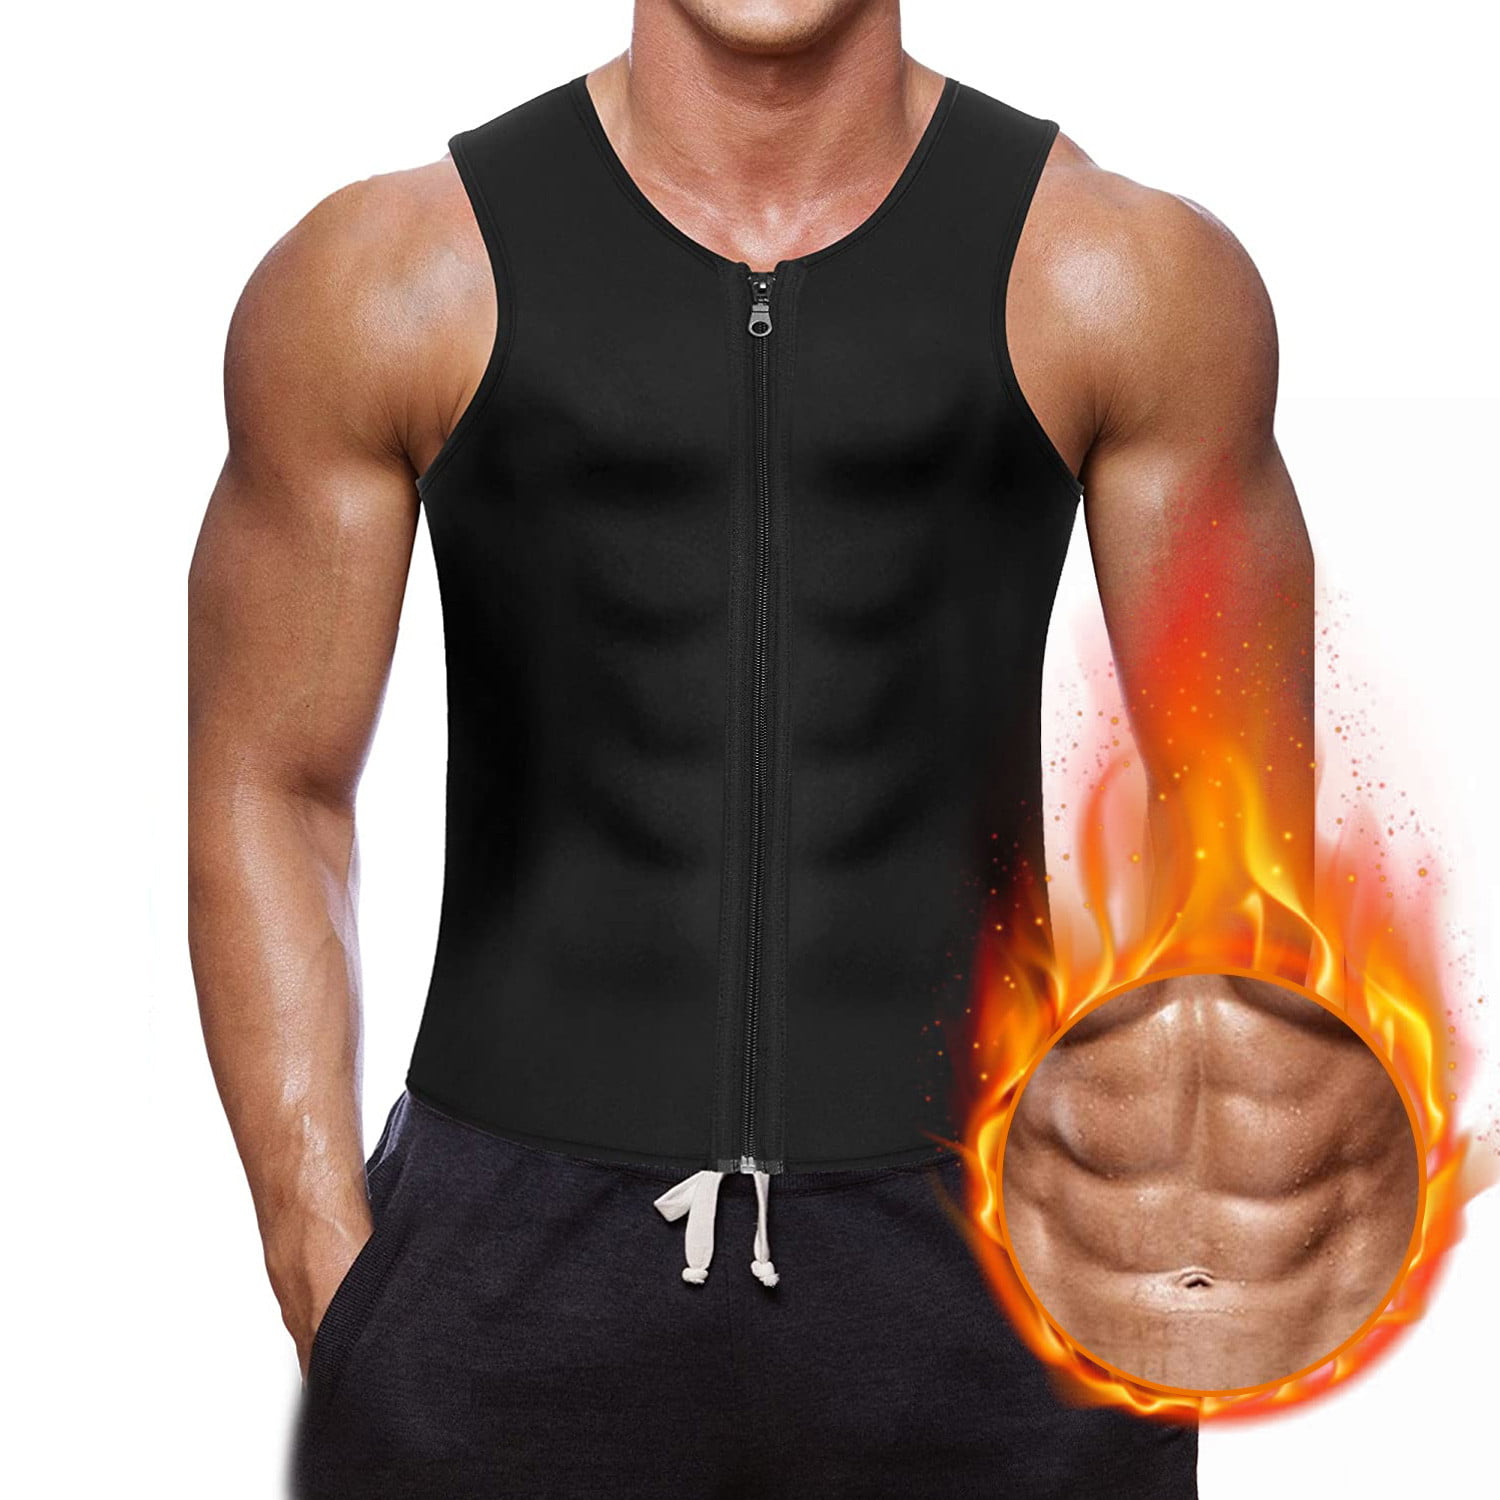 Men's XL Body Shaper Sauna Sweat Workout Suit Fitness Vest Waist Weight Loss New 